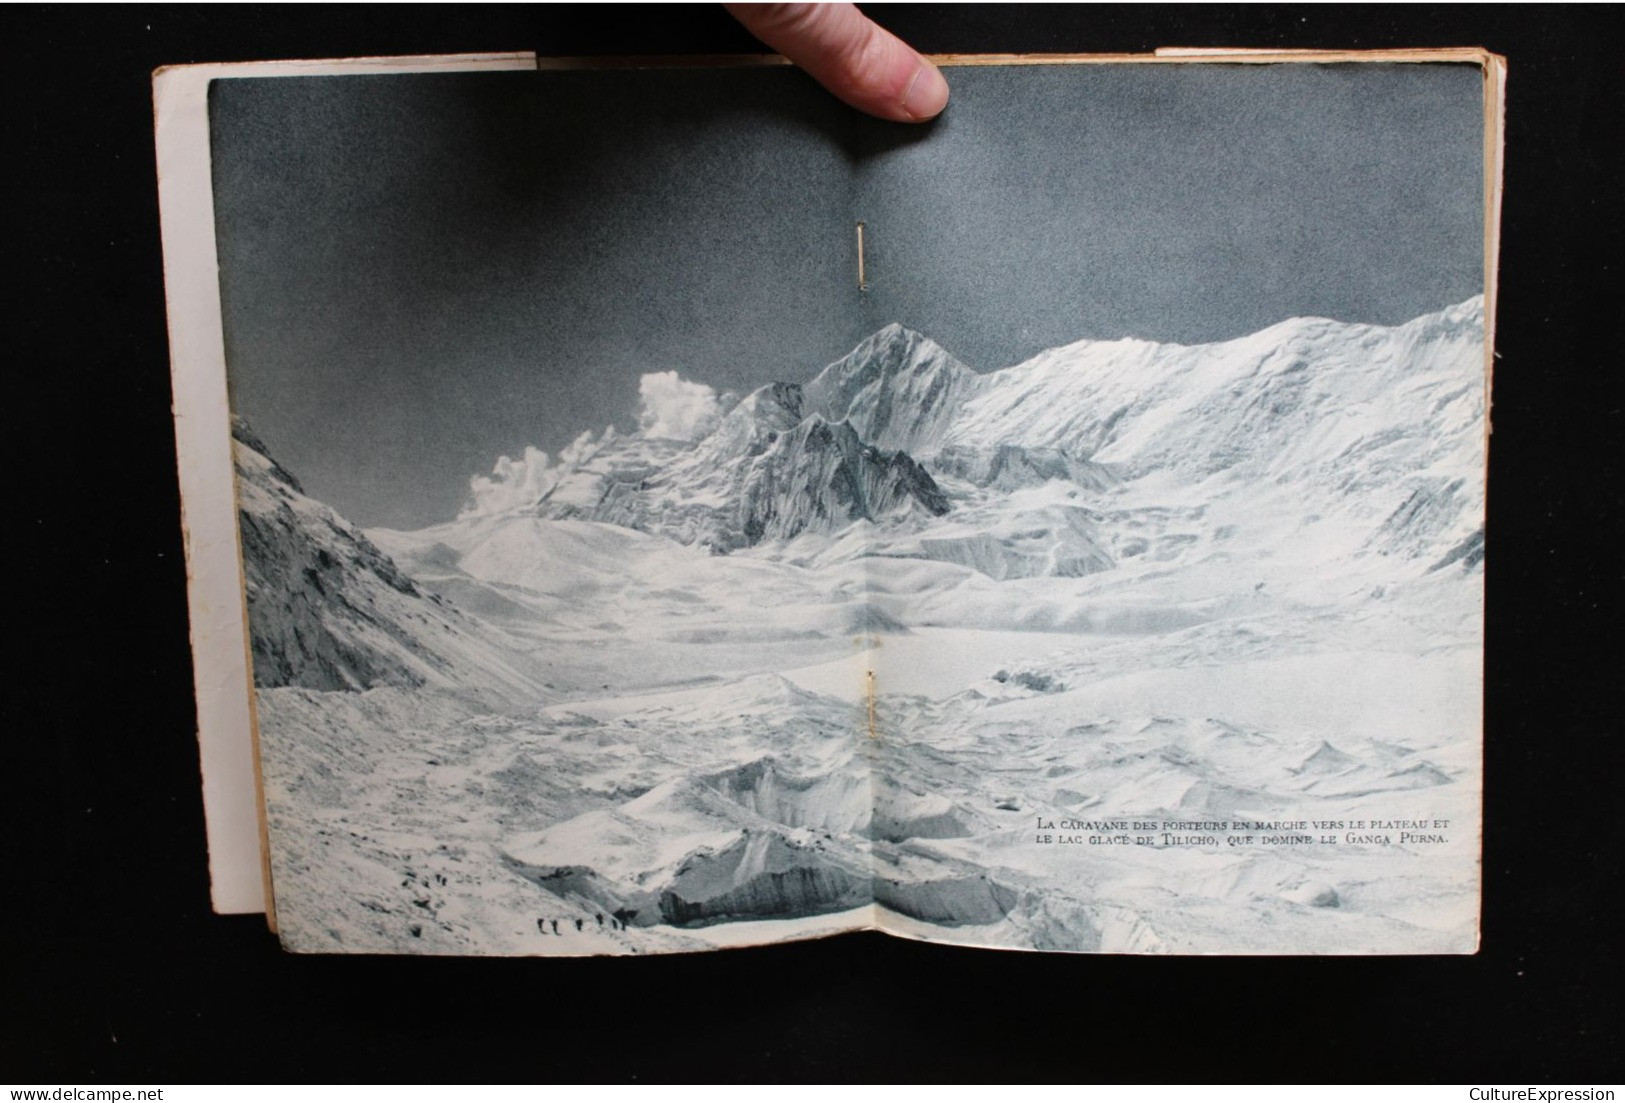 Annapurna premier 8.000 (Arthaud, collection Sempervivum, 1951), roman autobiographique de Maurice Herzog